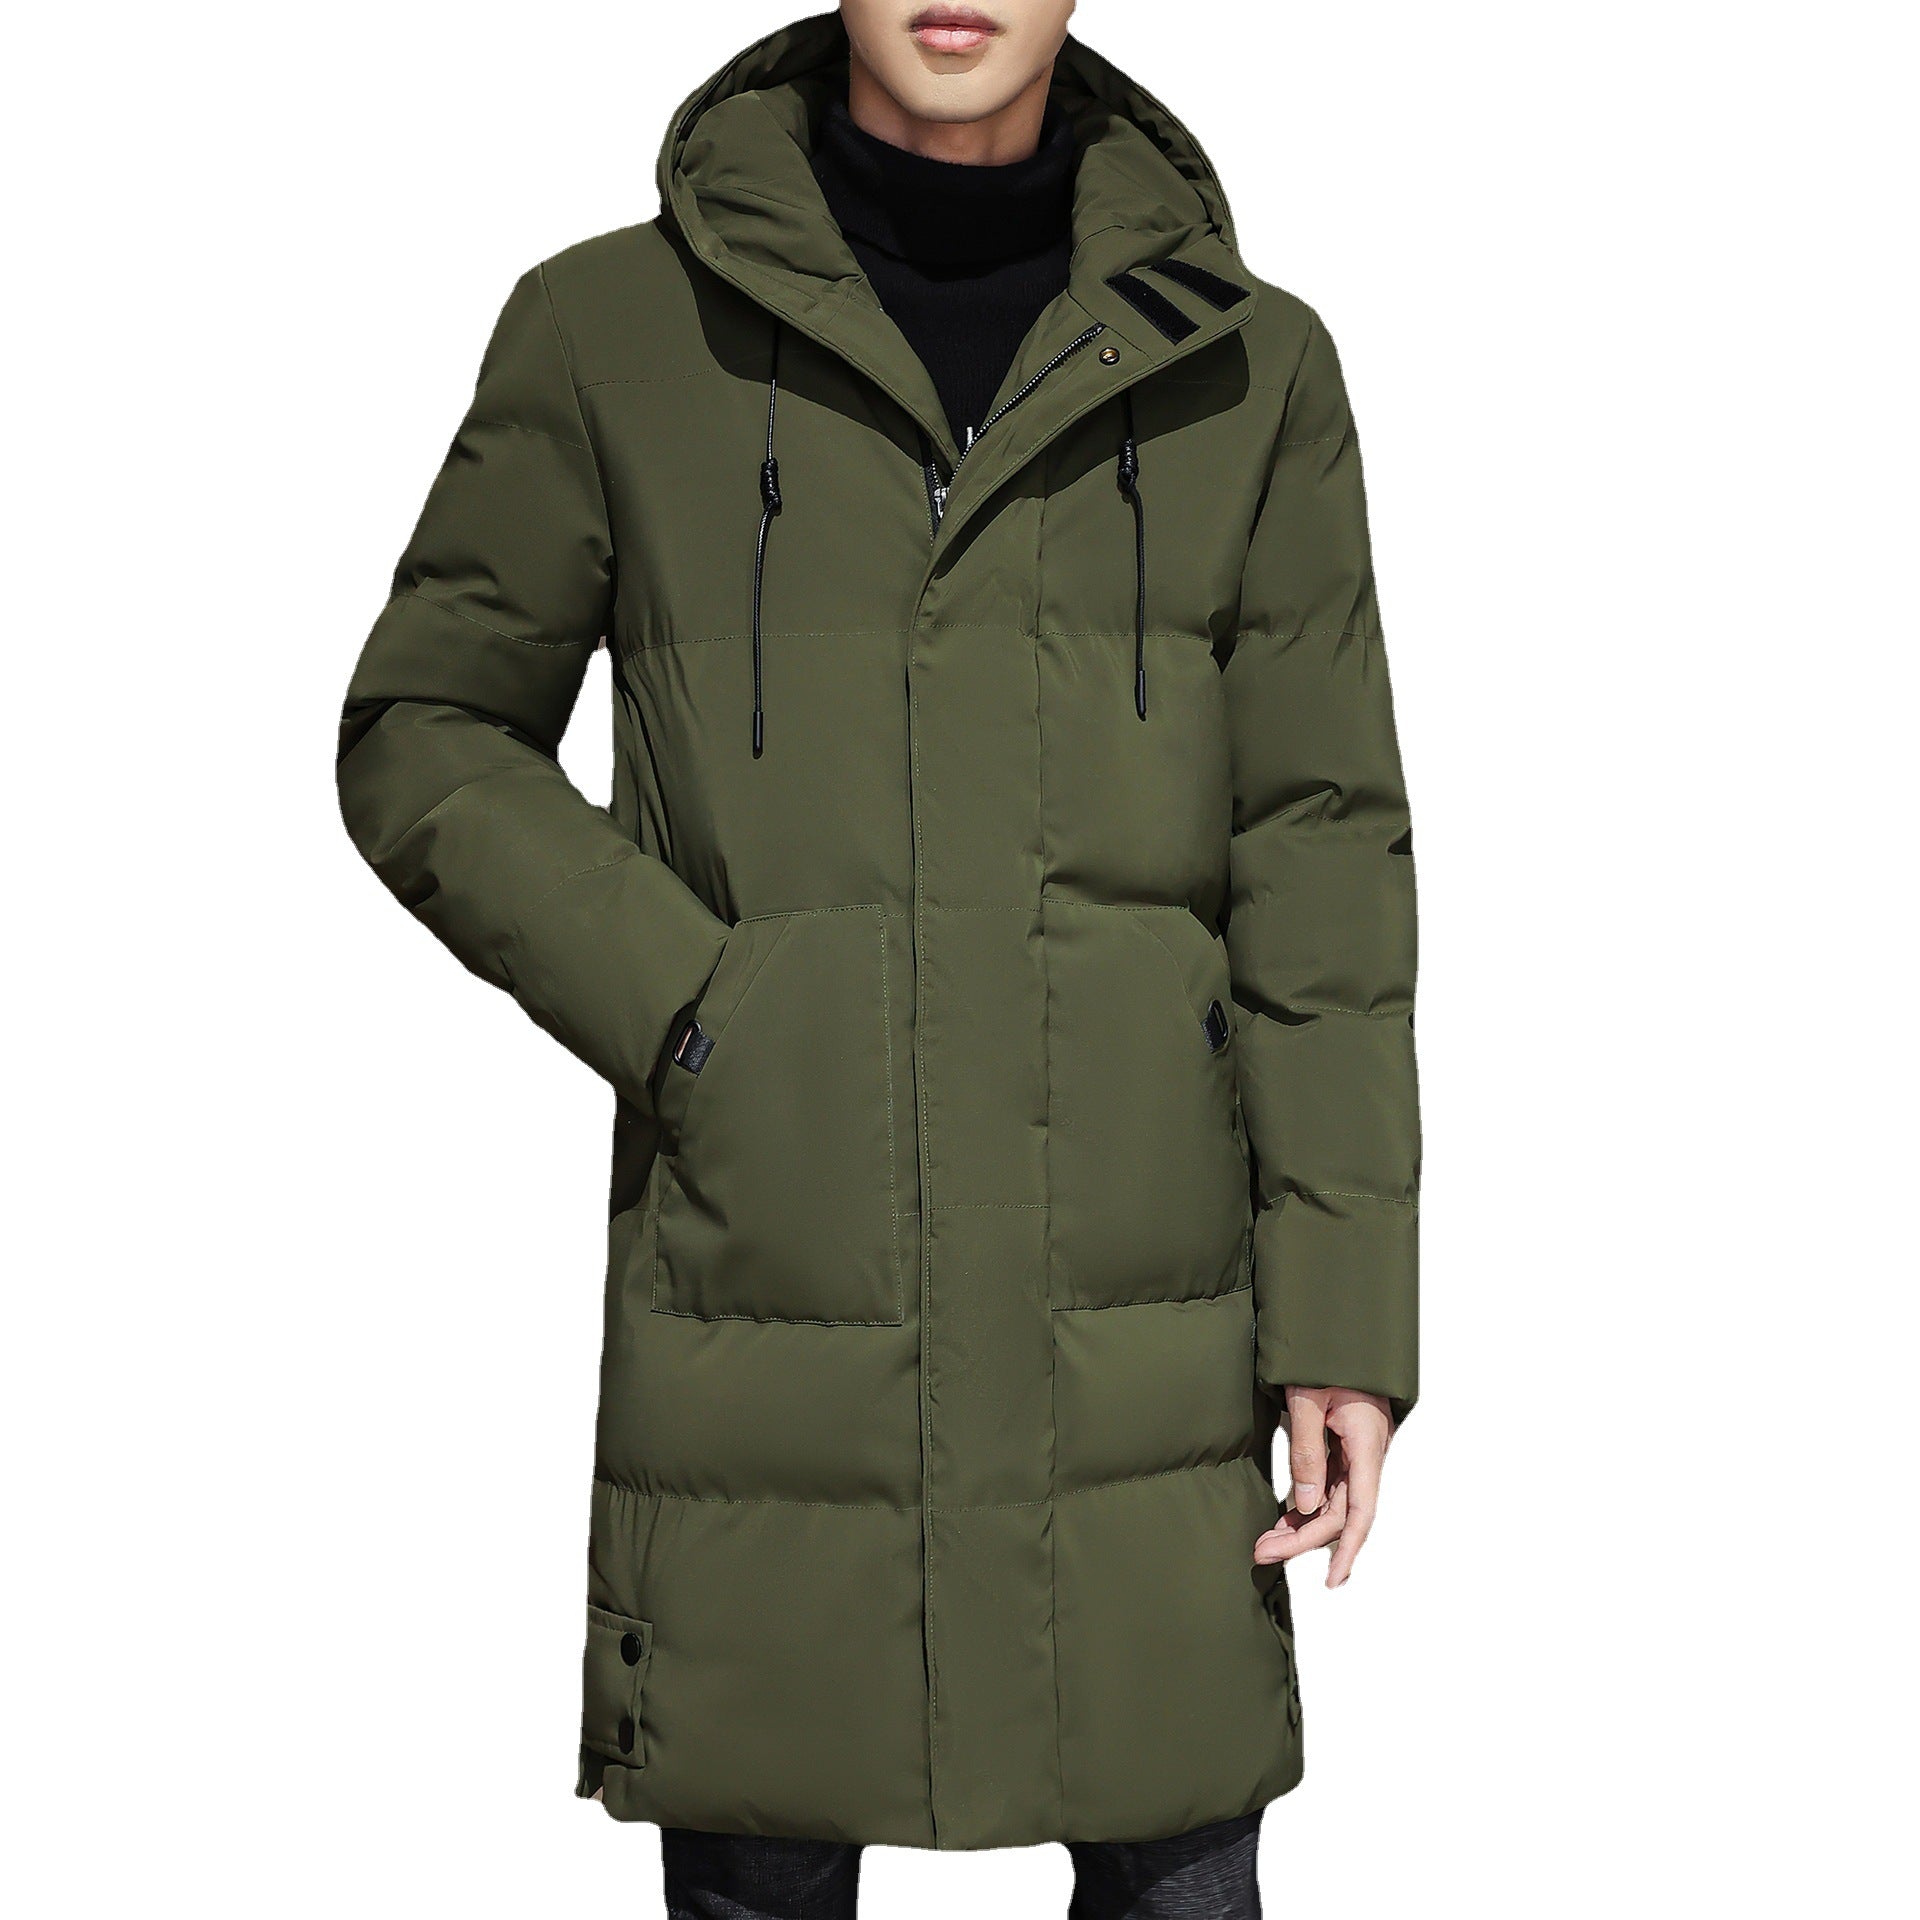 Plus Size Men's Winter Cotton Coats - Thick Mid-length